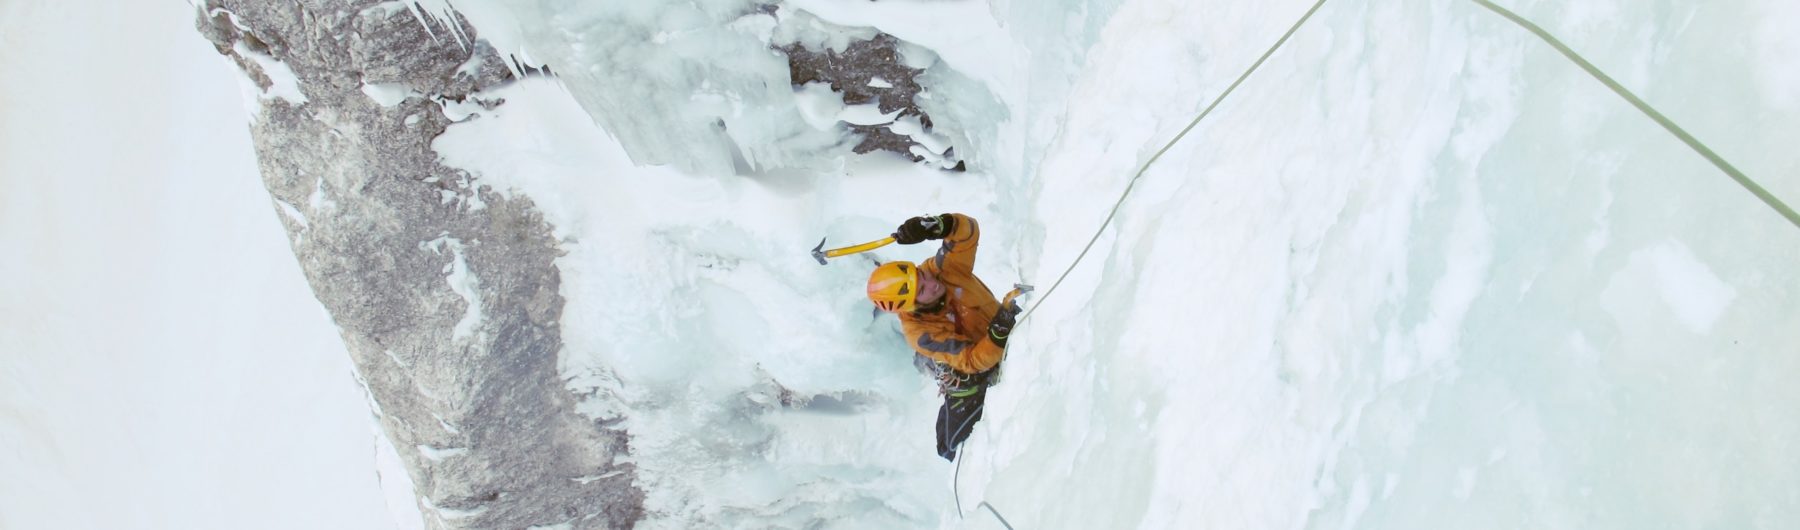 Eisklettern in den Dolomiten mit Bergführer Piovra Langental Gröden